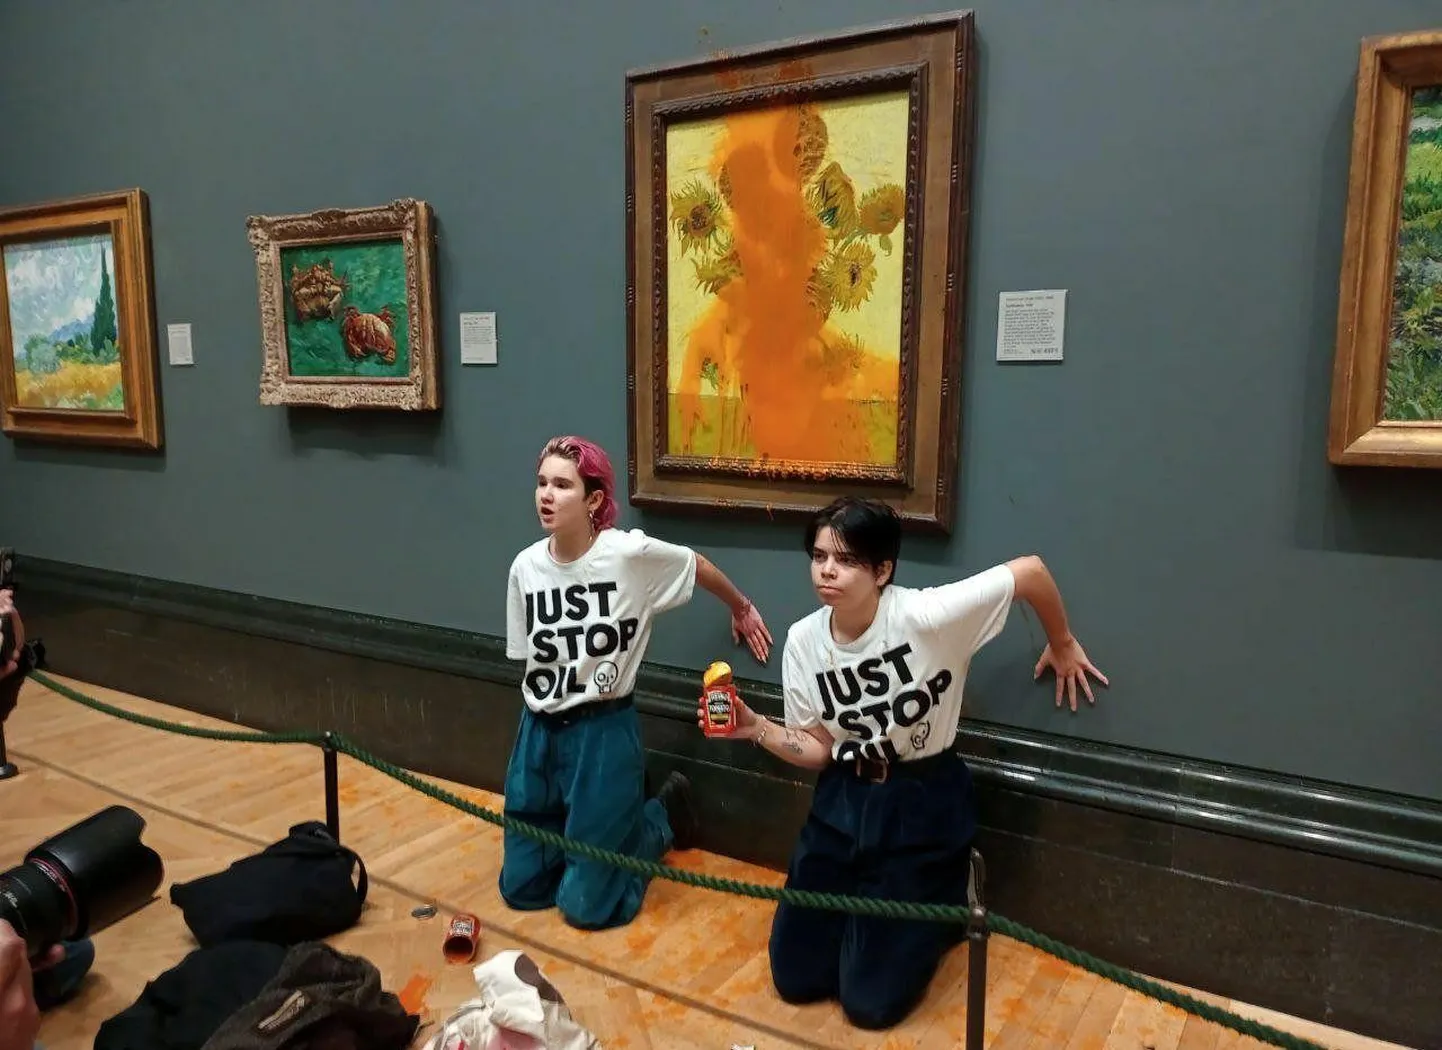 Briti keskkonnaaktivistid viskasid reedel Londoni Rahvusgaleriis eksponeeritud Vincent van Goghi «Päevalillede» pildi pihta konservsuppi.

 